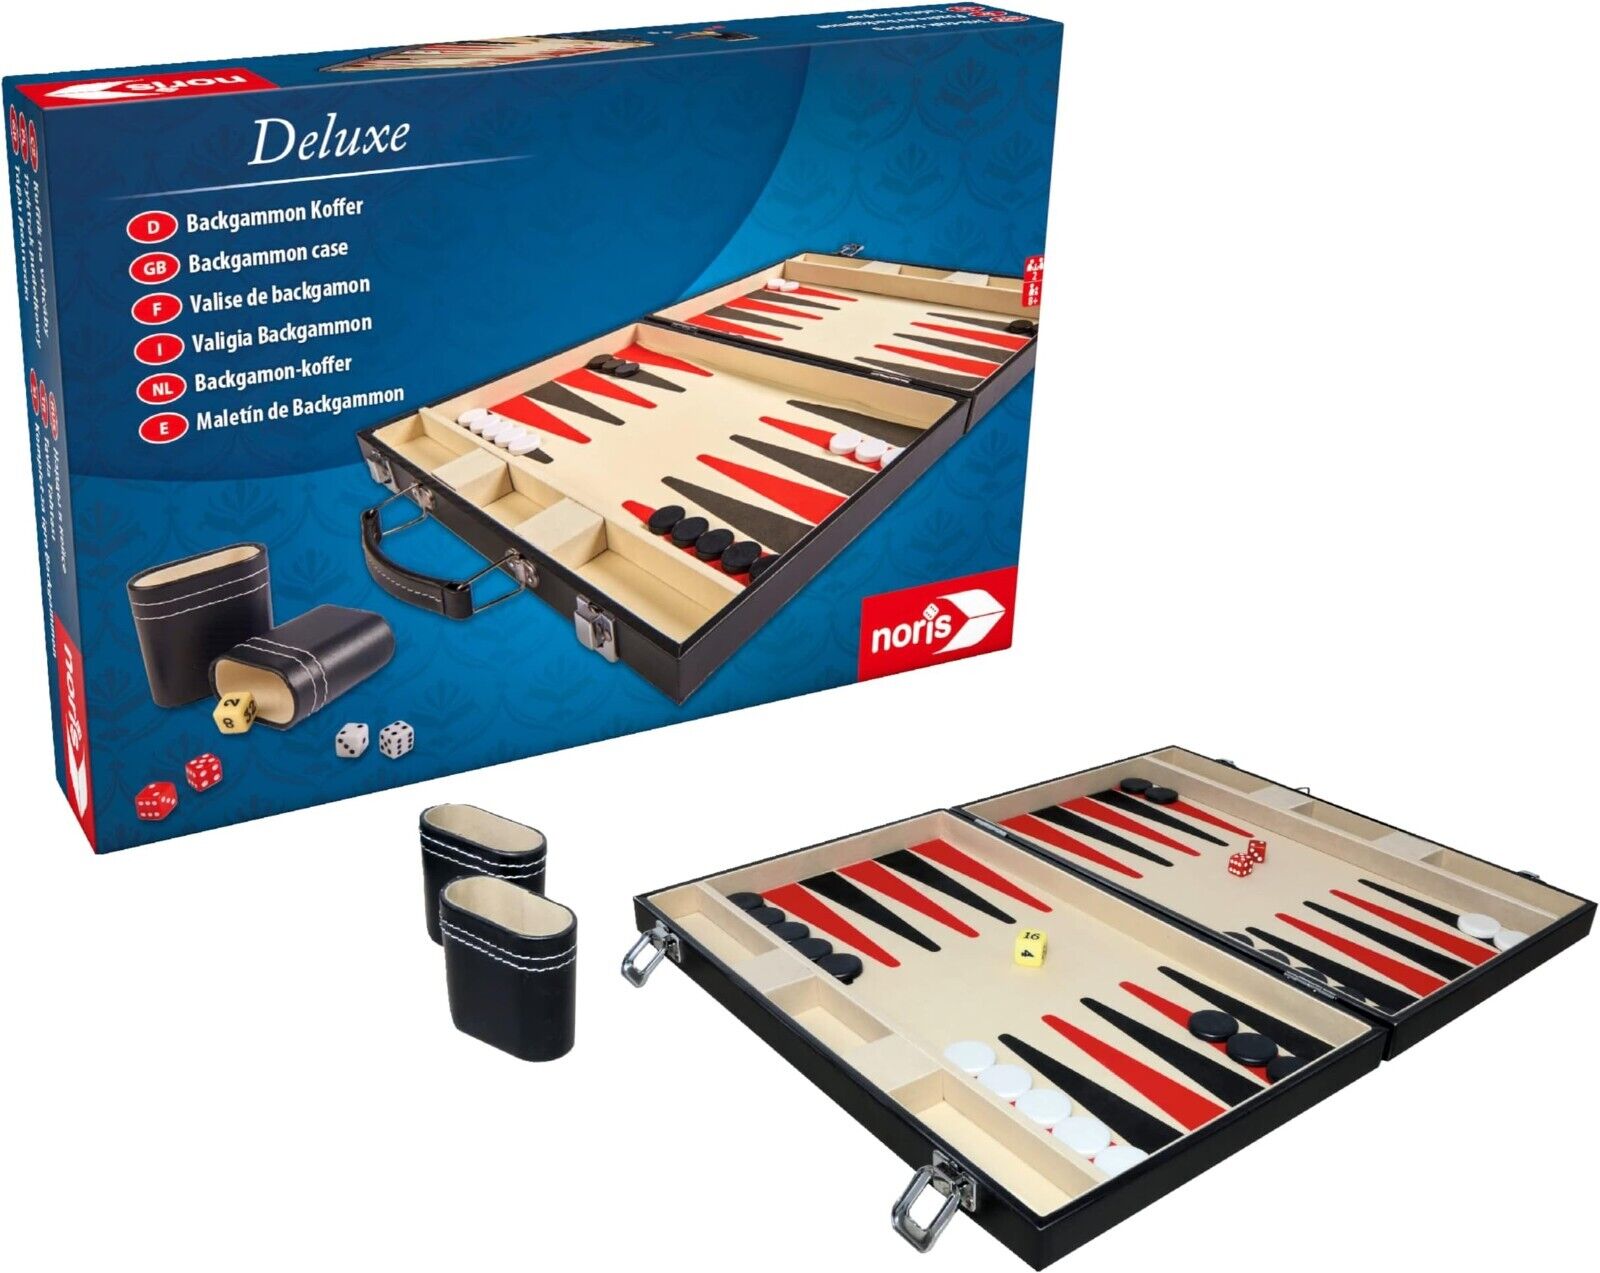 Noris 606101712 - Deluxe Backgammon im Koffer, Strategiespiel im handlichen Koff